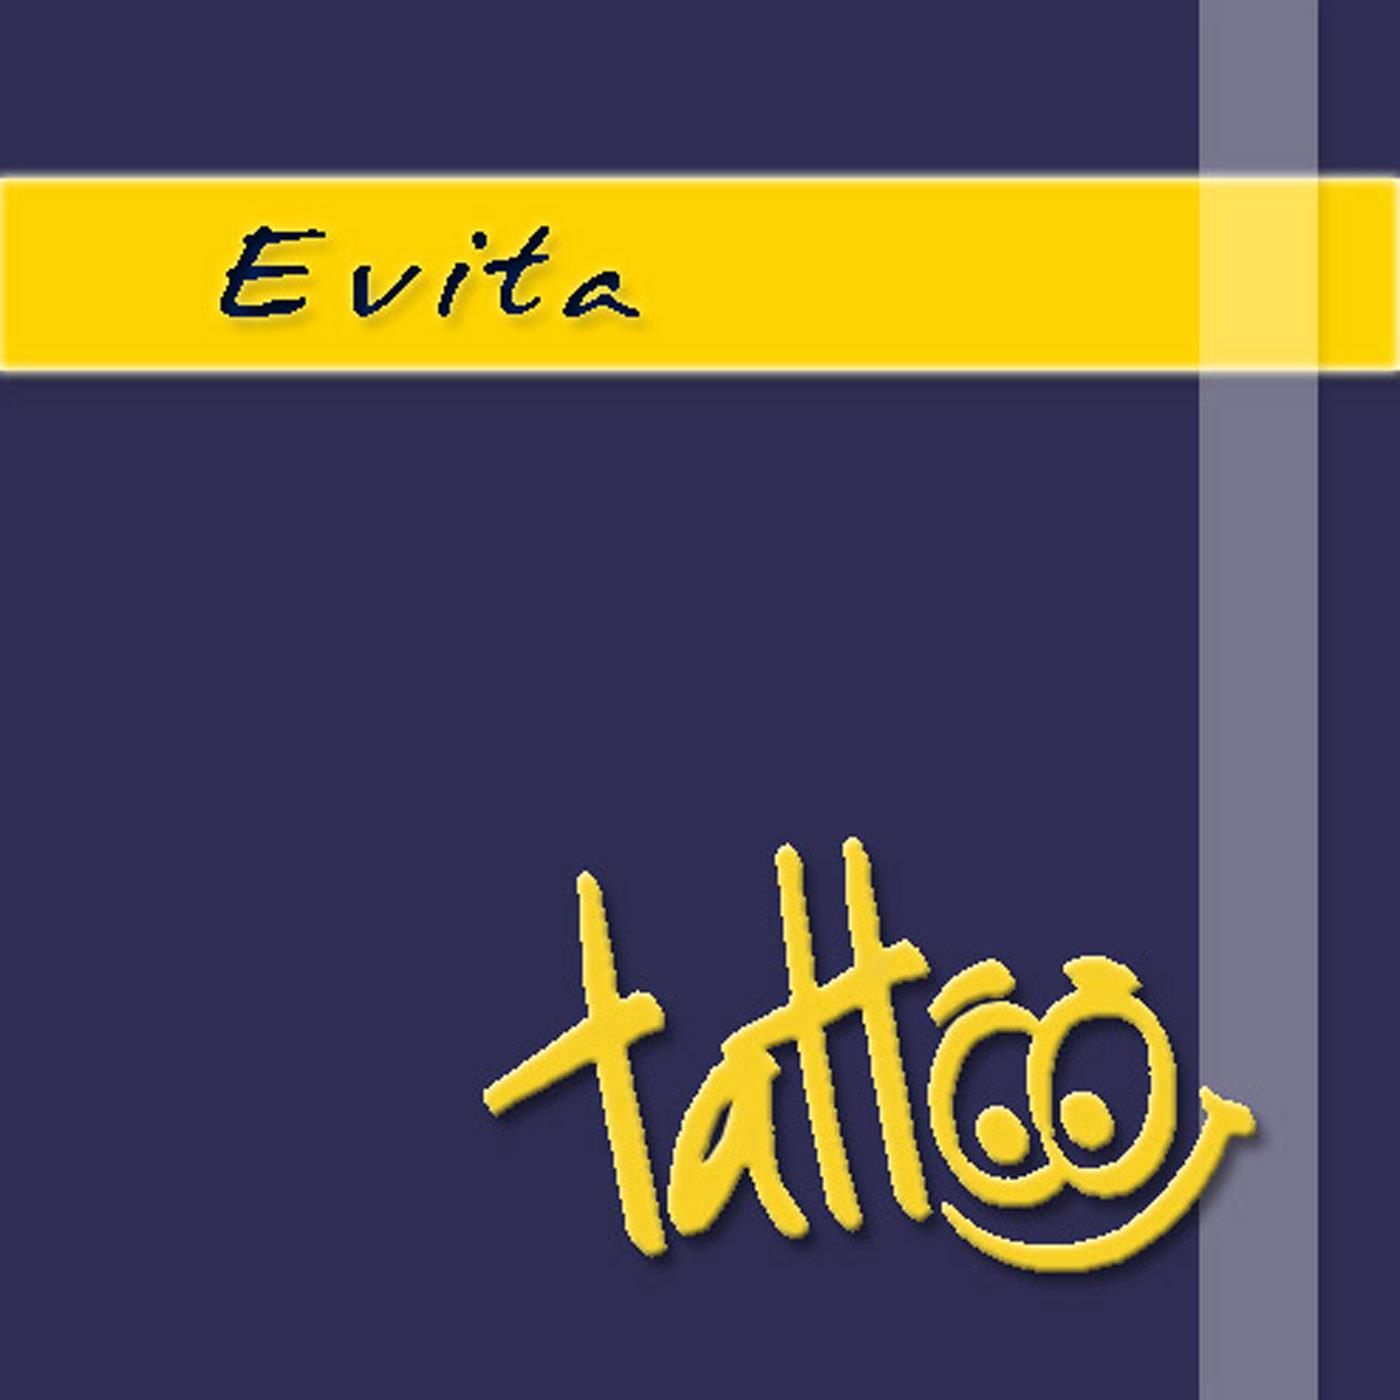 Tattoo - Evita